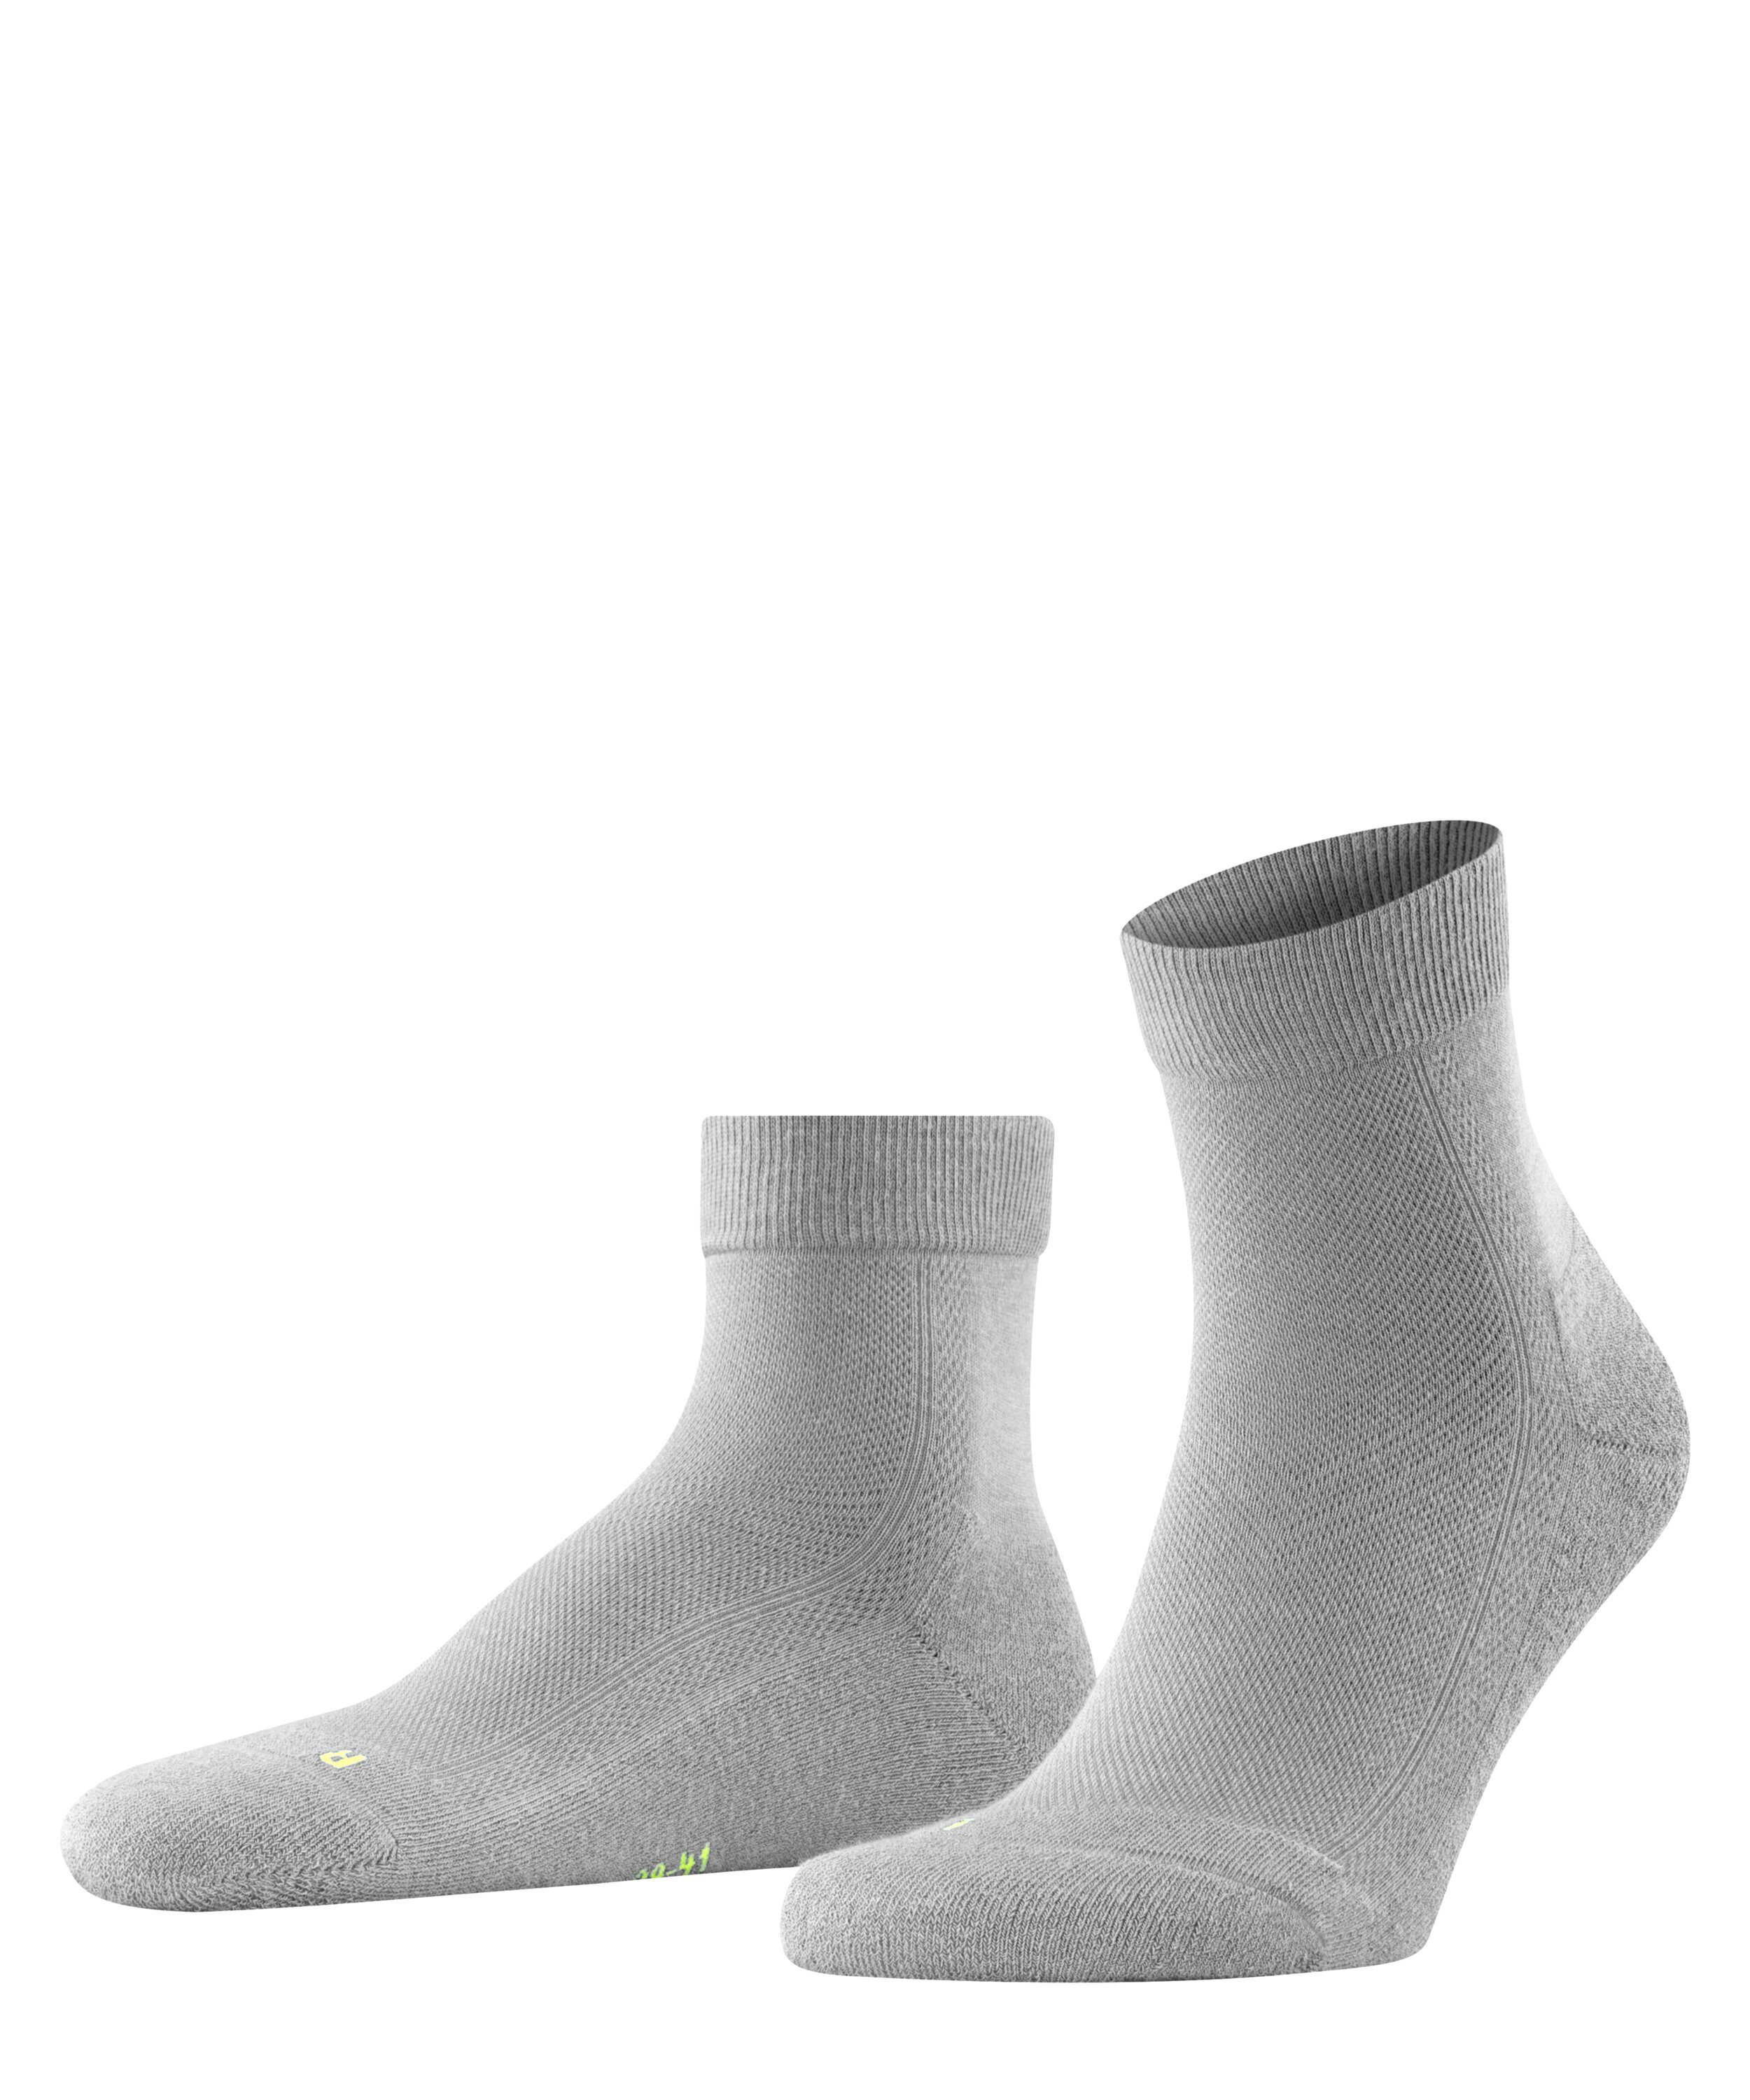 FALKE Socken Cool grey light (3400) (1-Paar) Kick